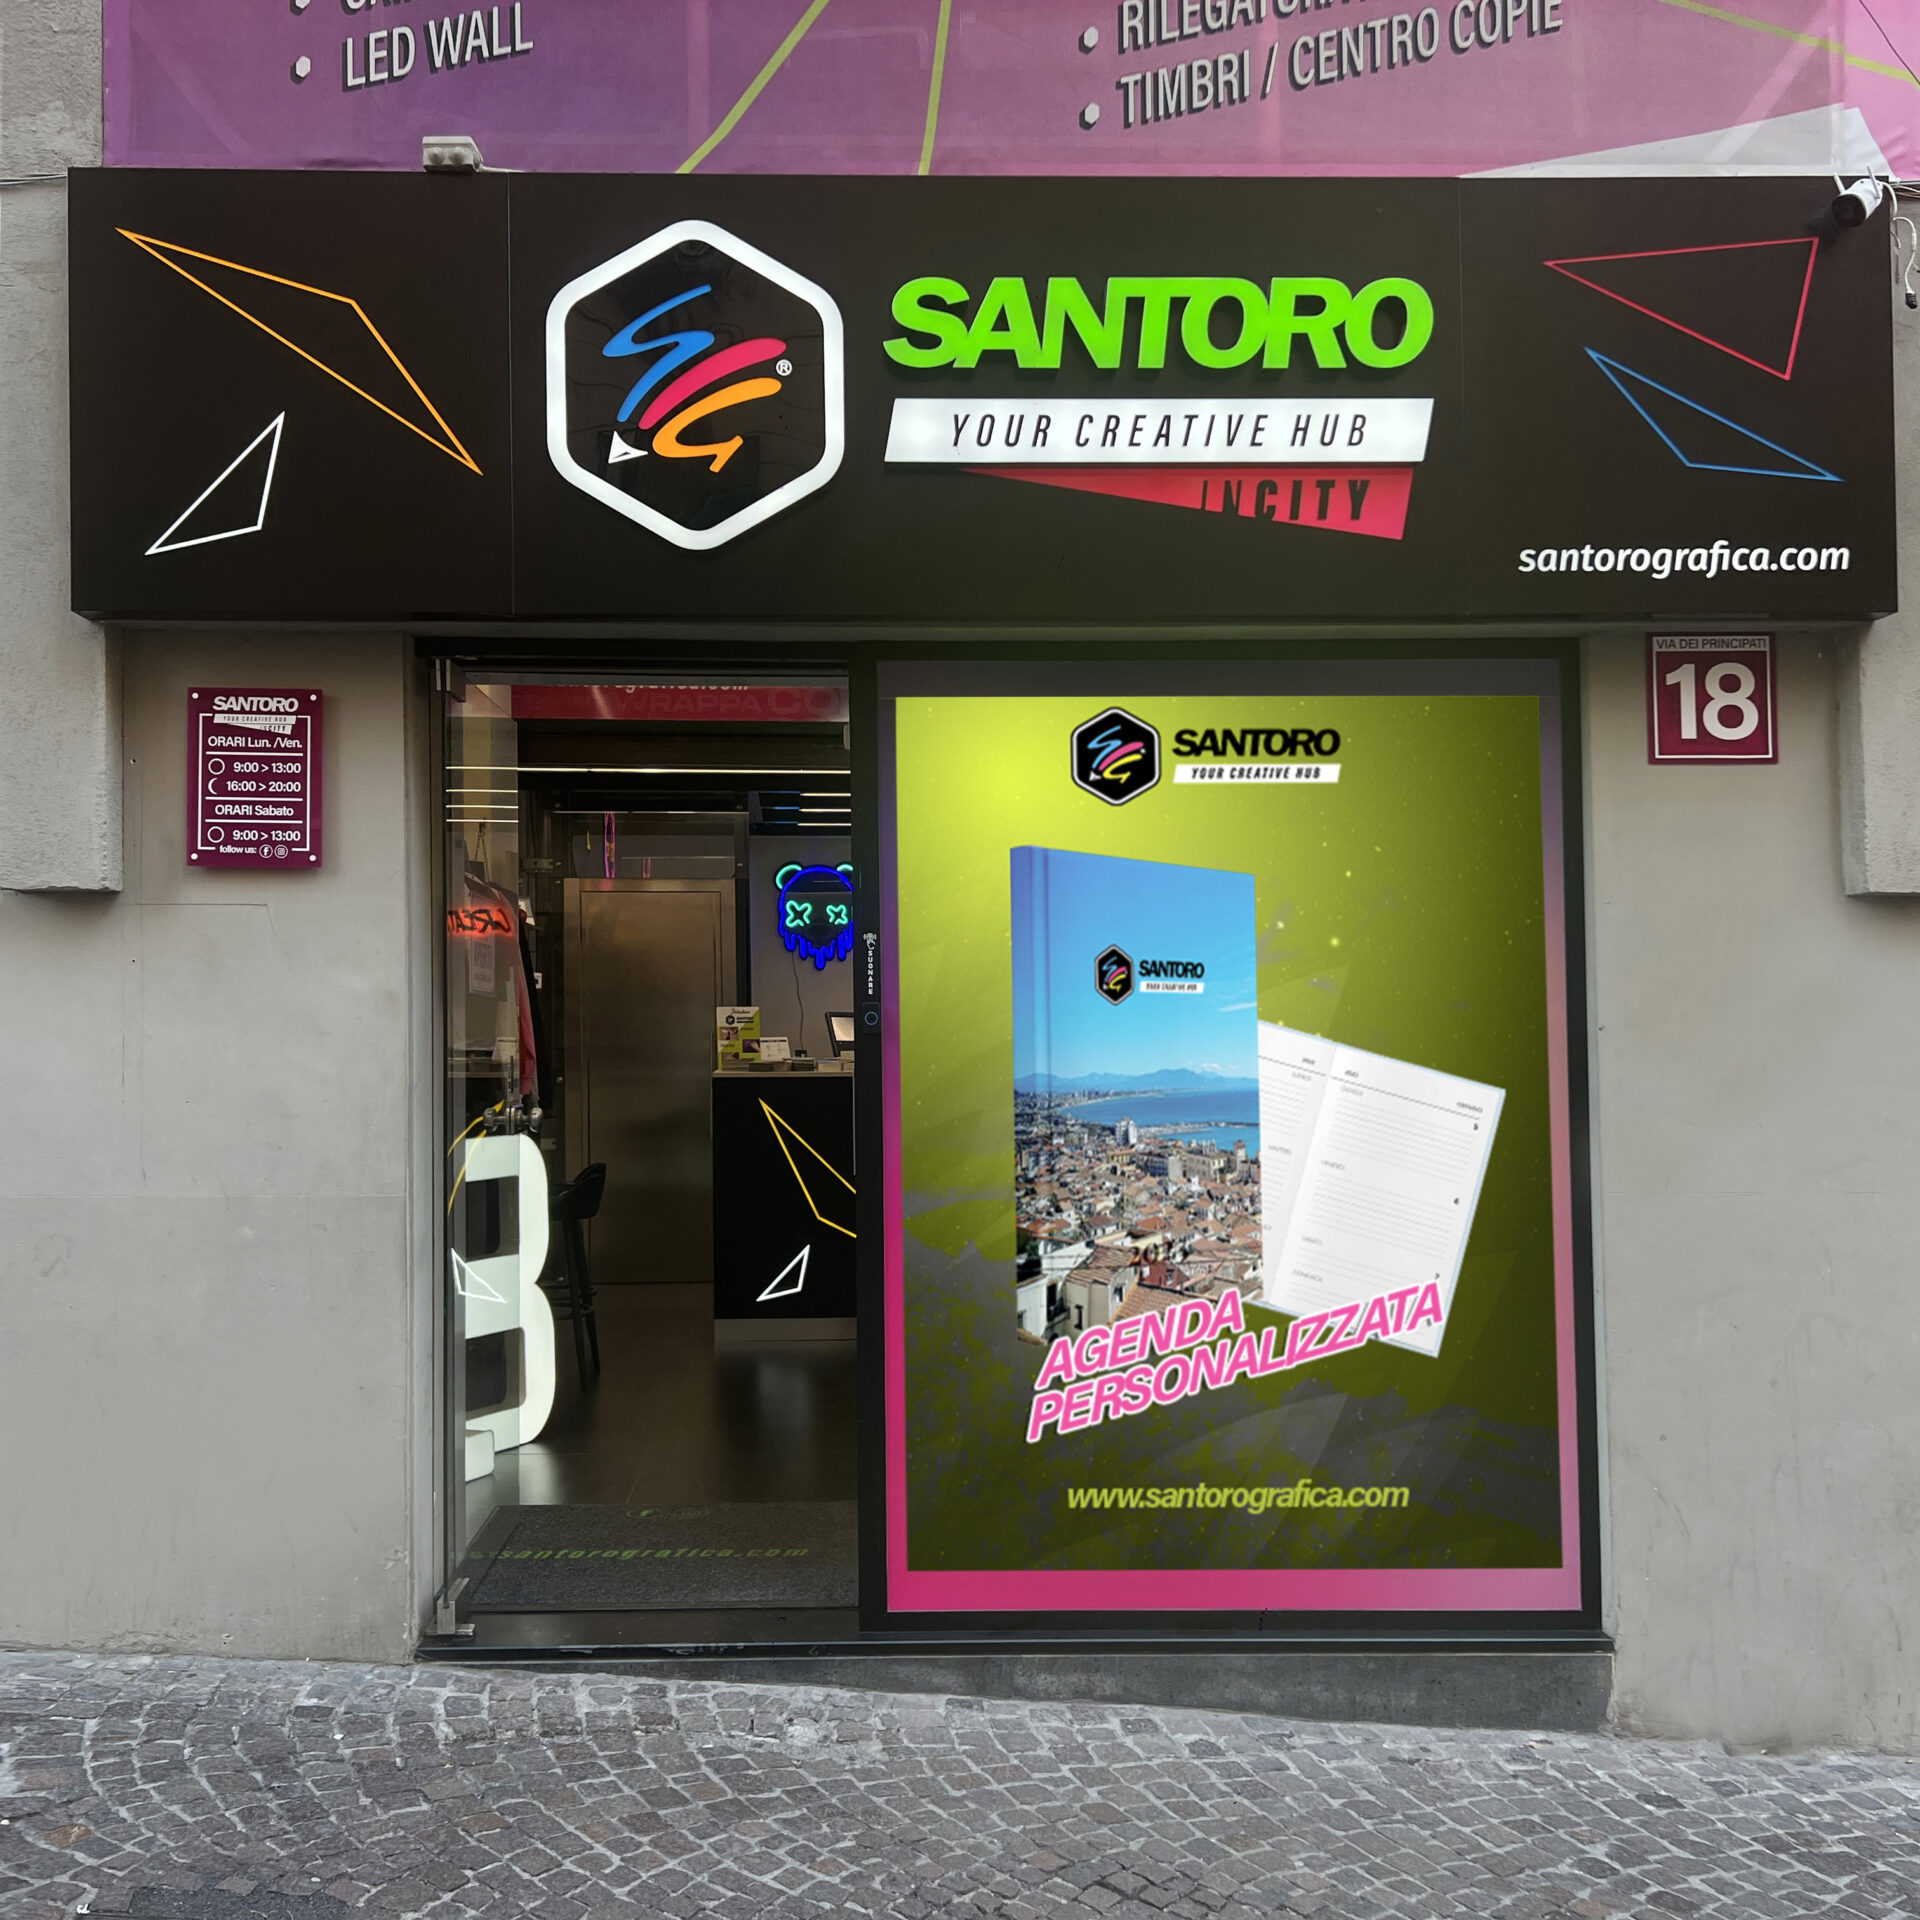 Led Santoro in city